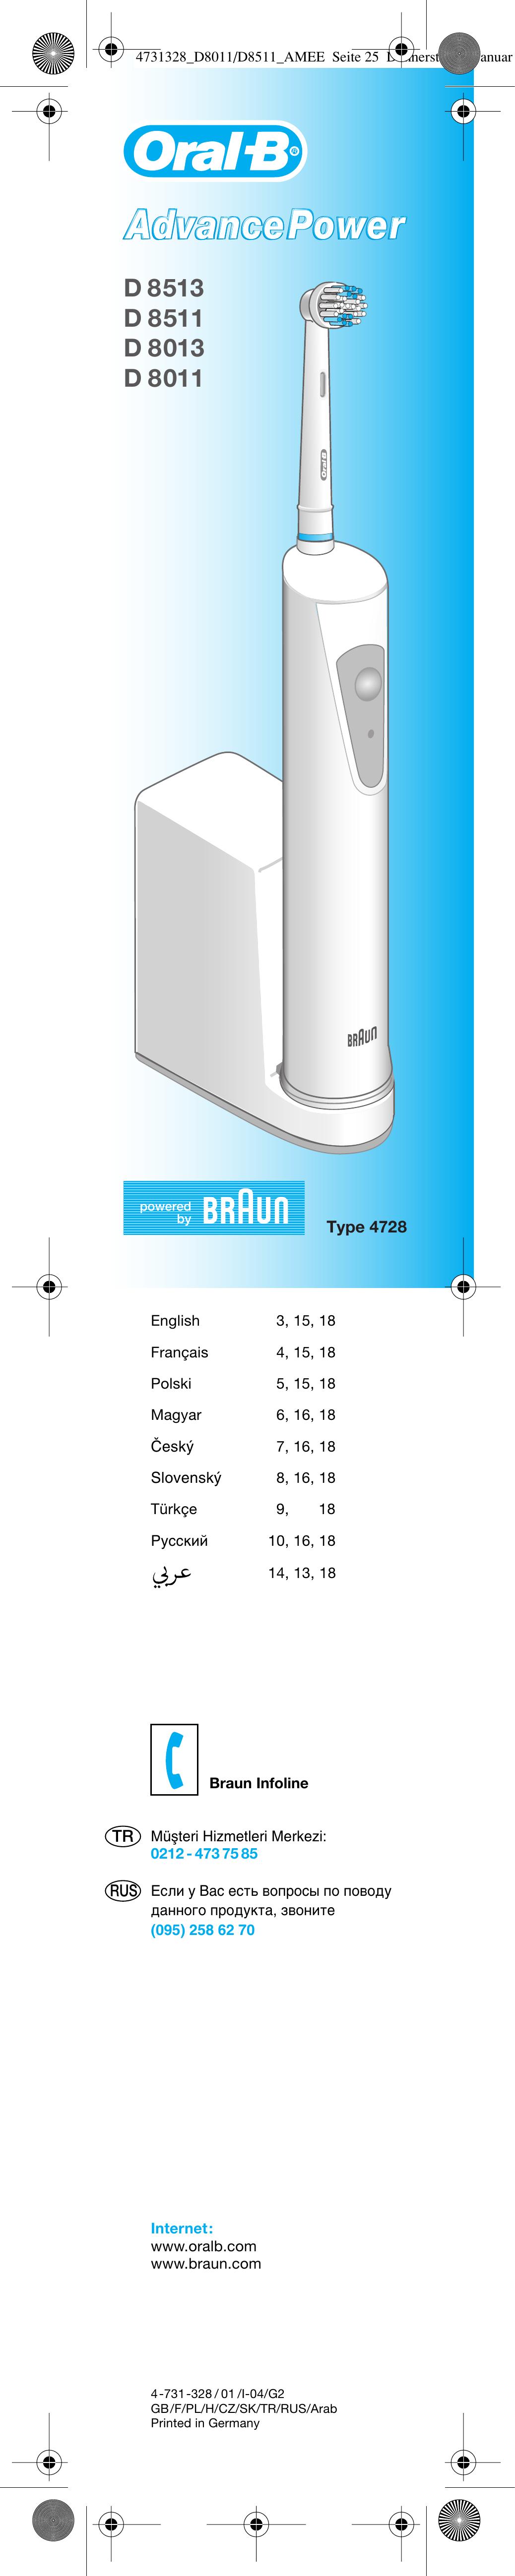 Braun D 8011 Electric Toothbrush User Manual